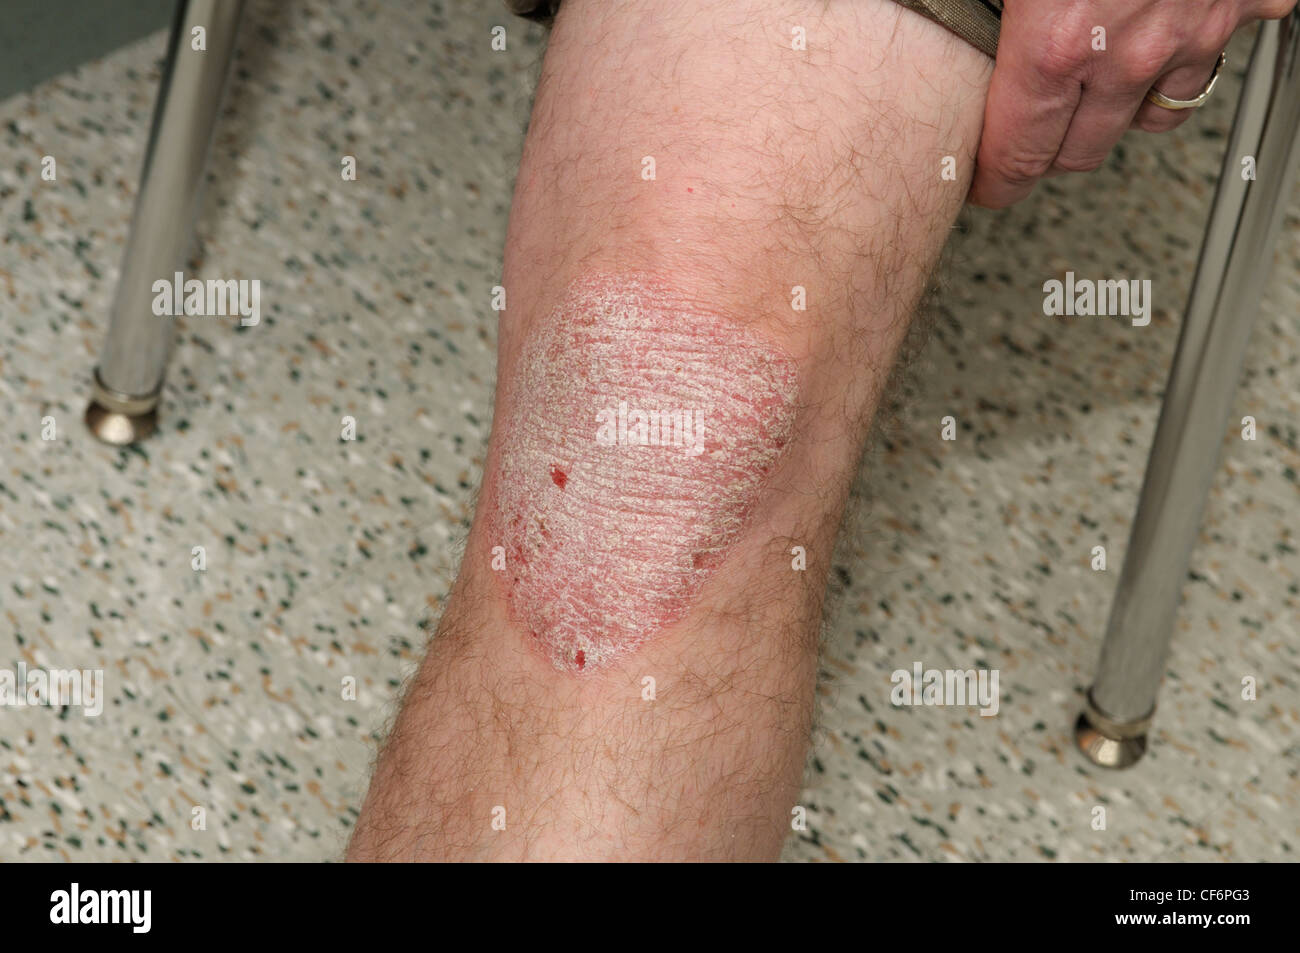 Plaque-Psoriasis auf den Knien ein erwachsener Mann, 50 Jahre alt Stockfoto